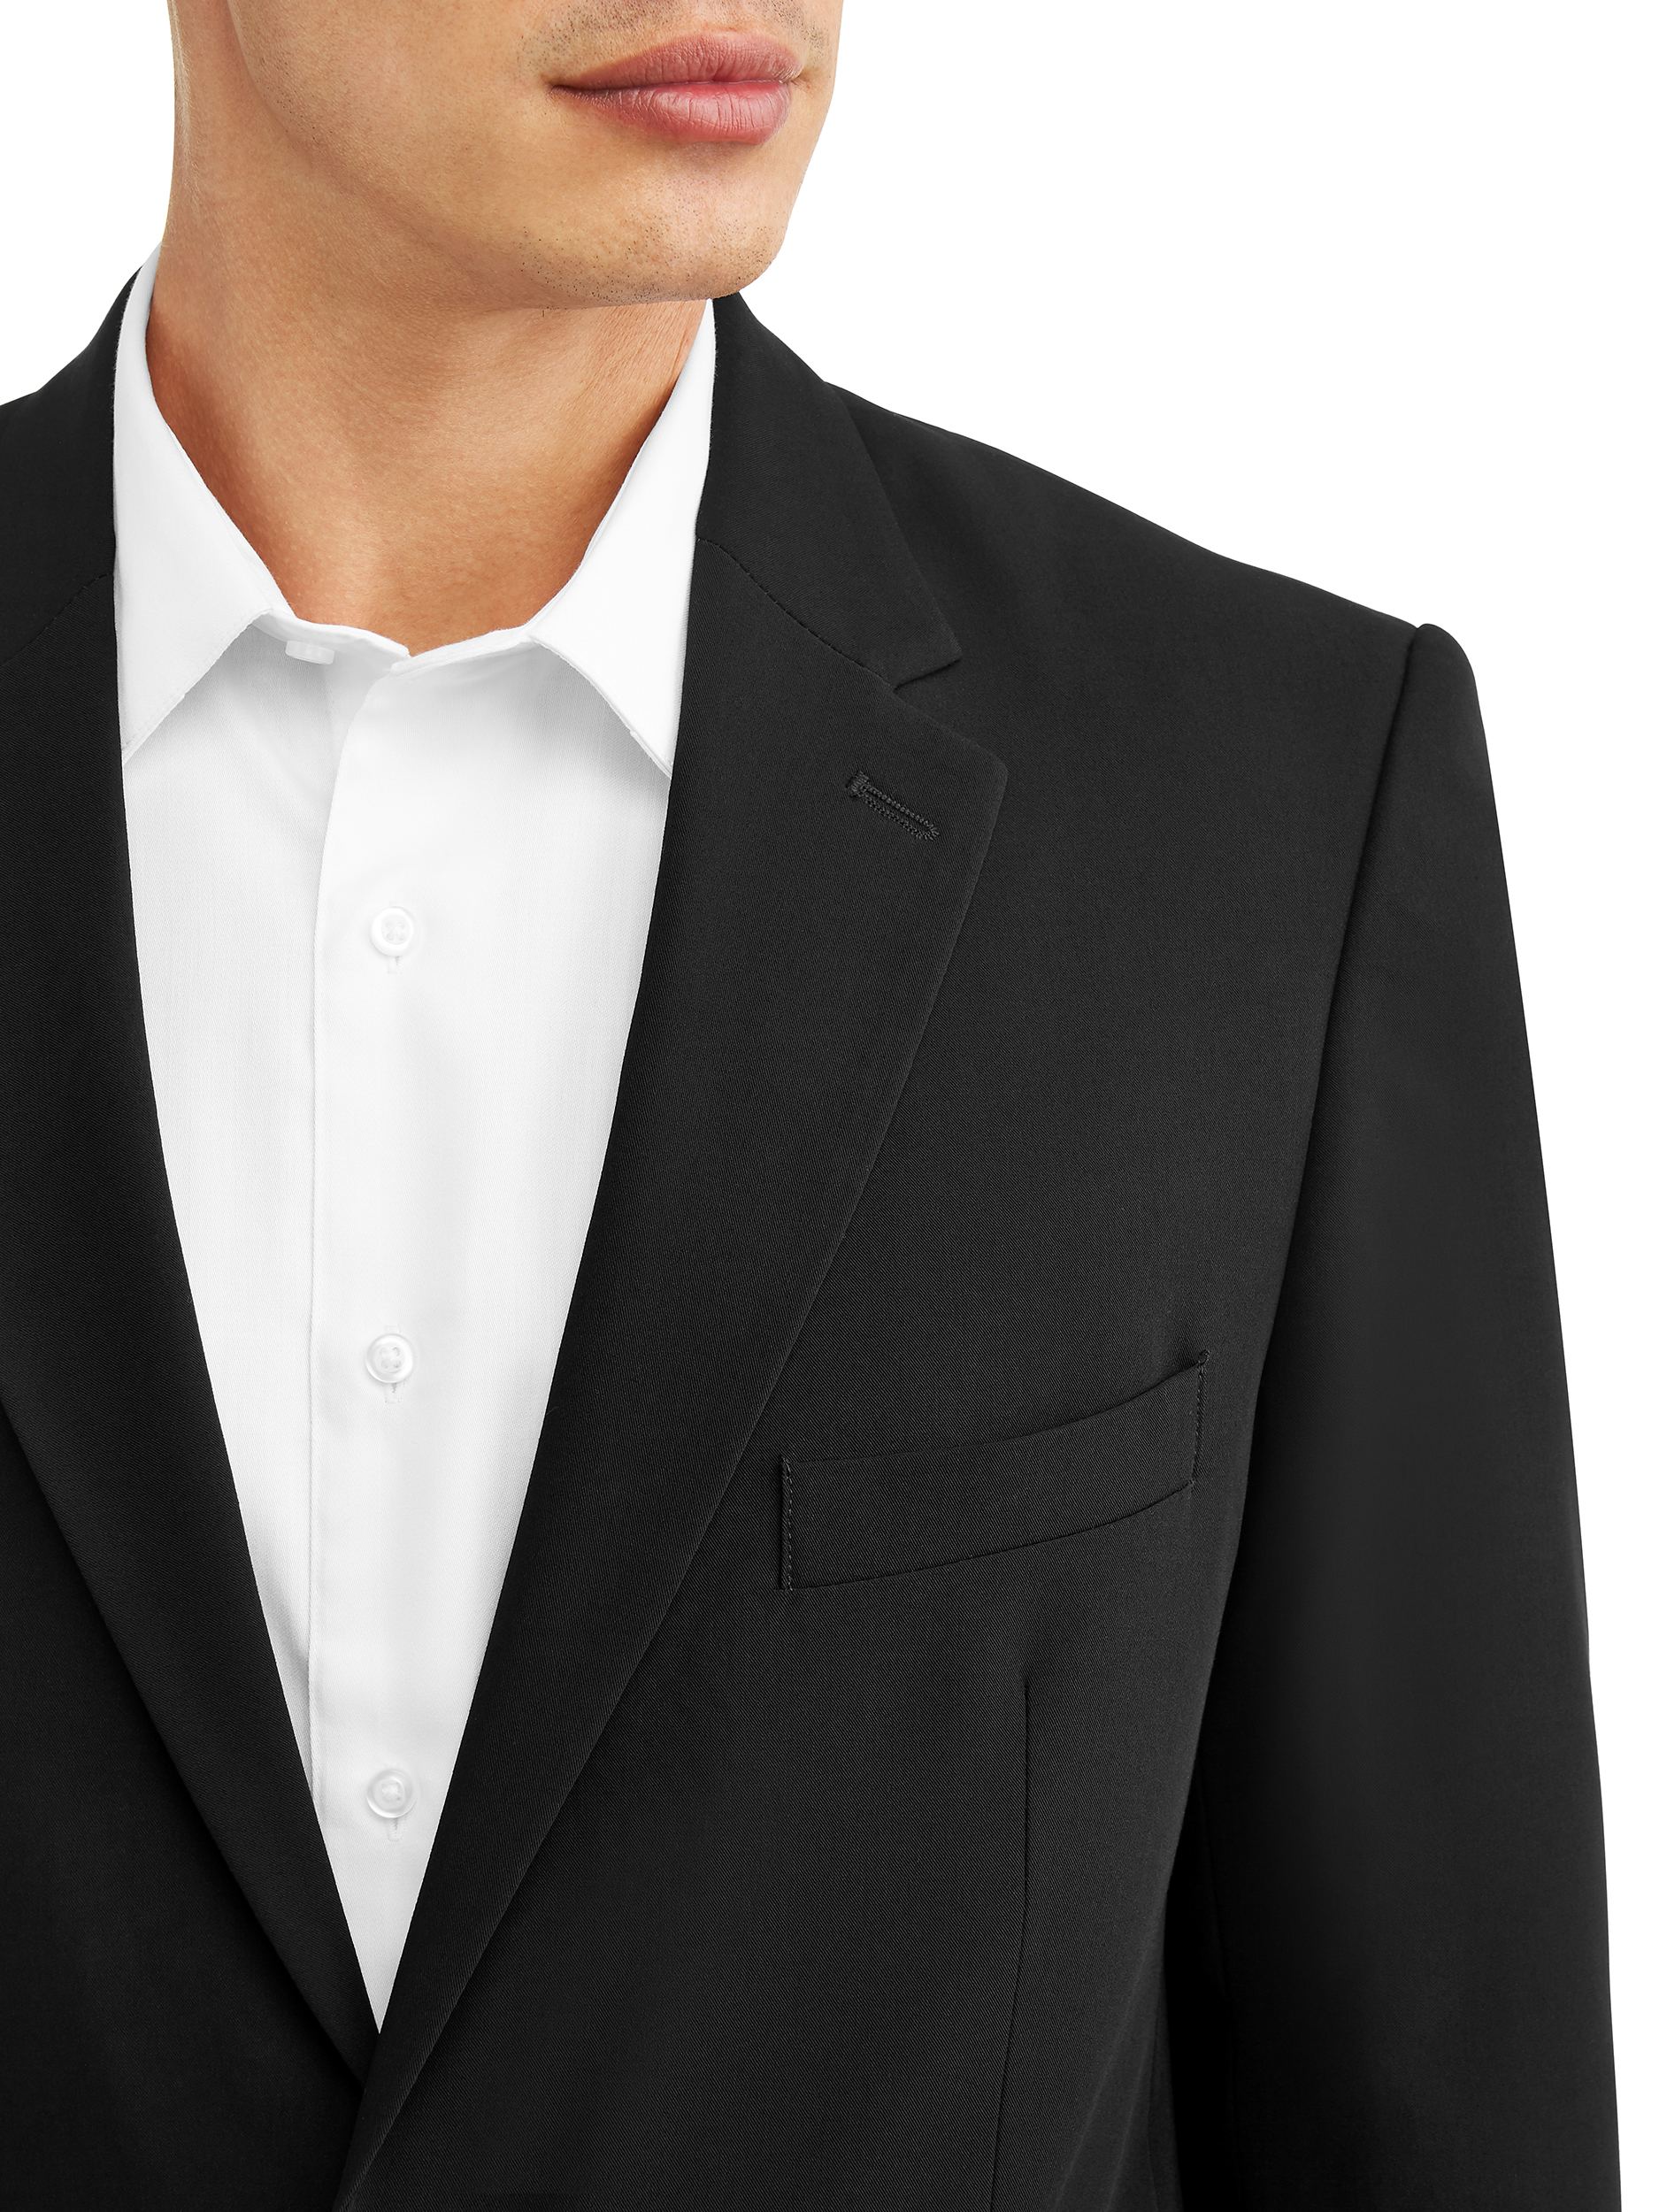 George Men's Premium Comfort Stretch Suit Jacket - image 4 of 5